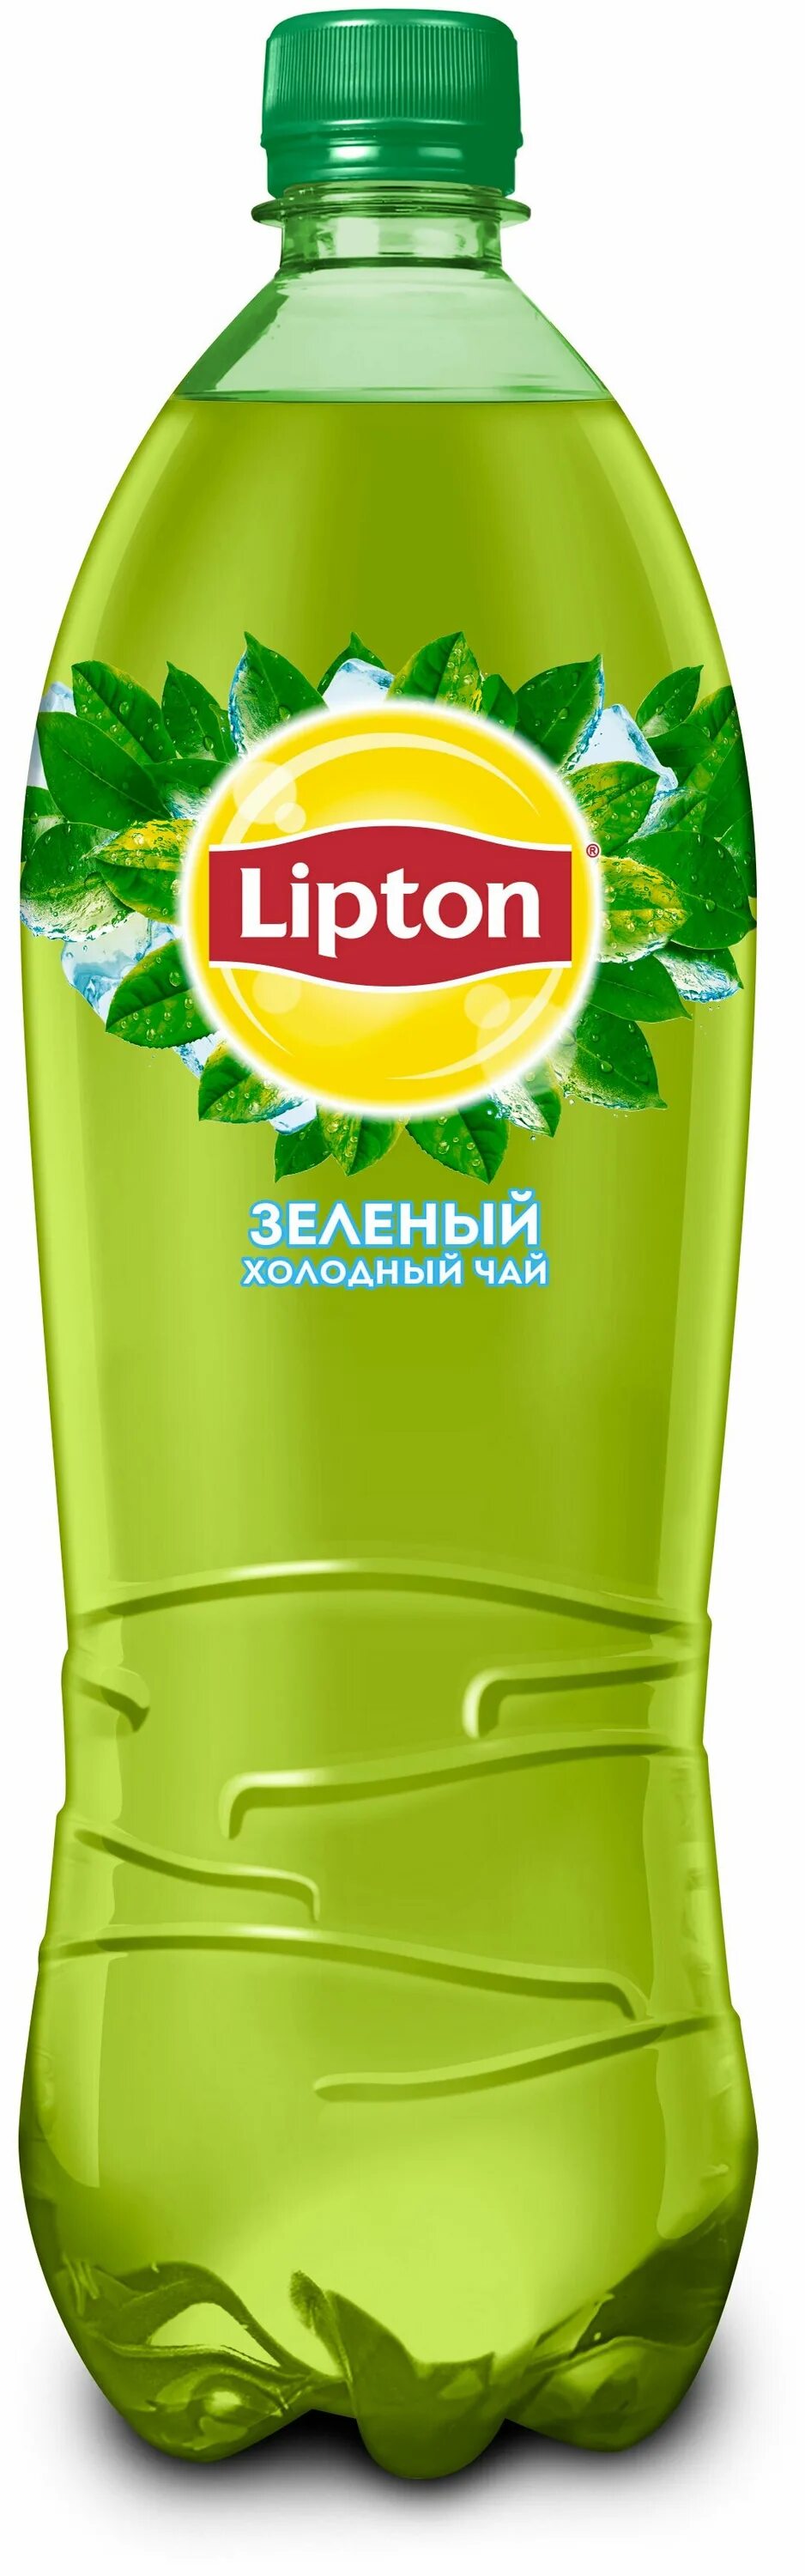 Чай холодный Липтон 1 л зеленый ПЭТ. Холодны зеленый час Липтон с. Липтон зеленый чай 1л. Чай Липтон холодный зеленый 1л.